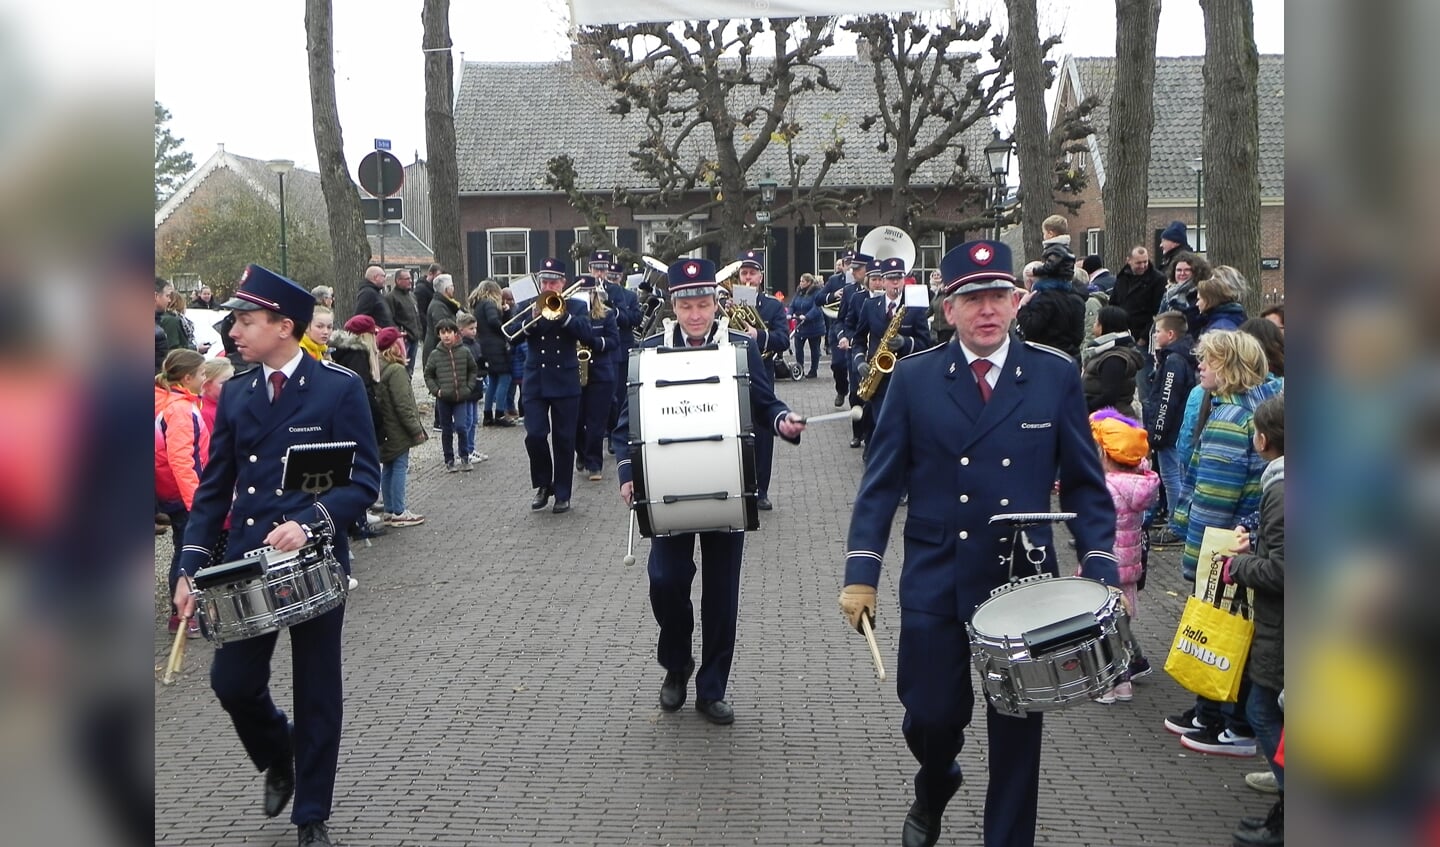 Drumfanfare Constancia liep voor de Sinterklaas stoet uit.